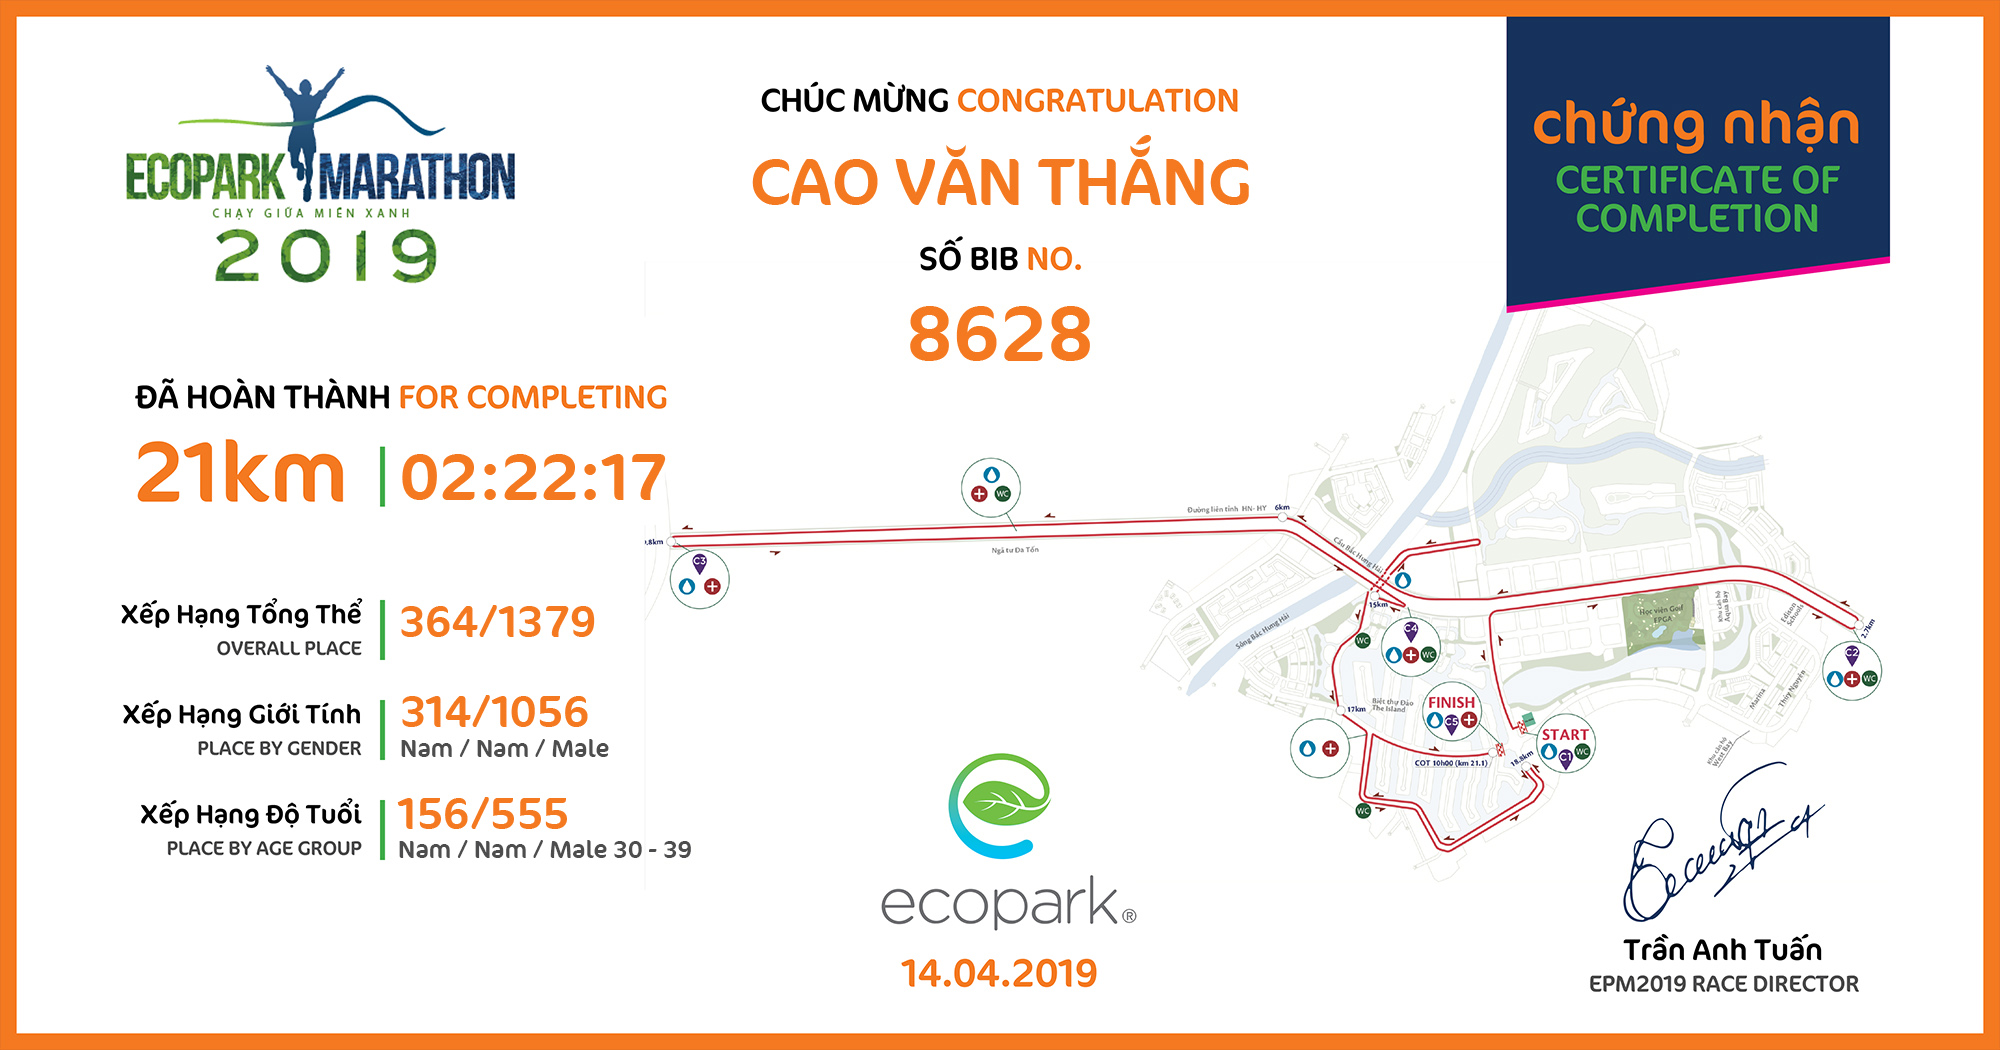 8628 - Cao Văn Thắng